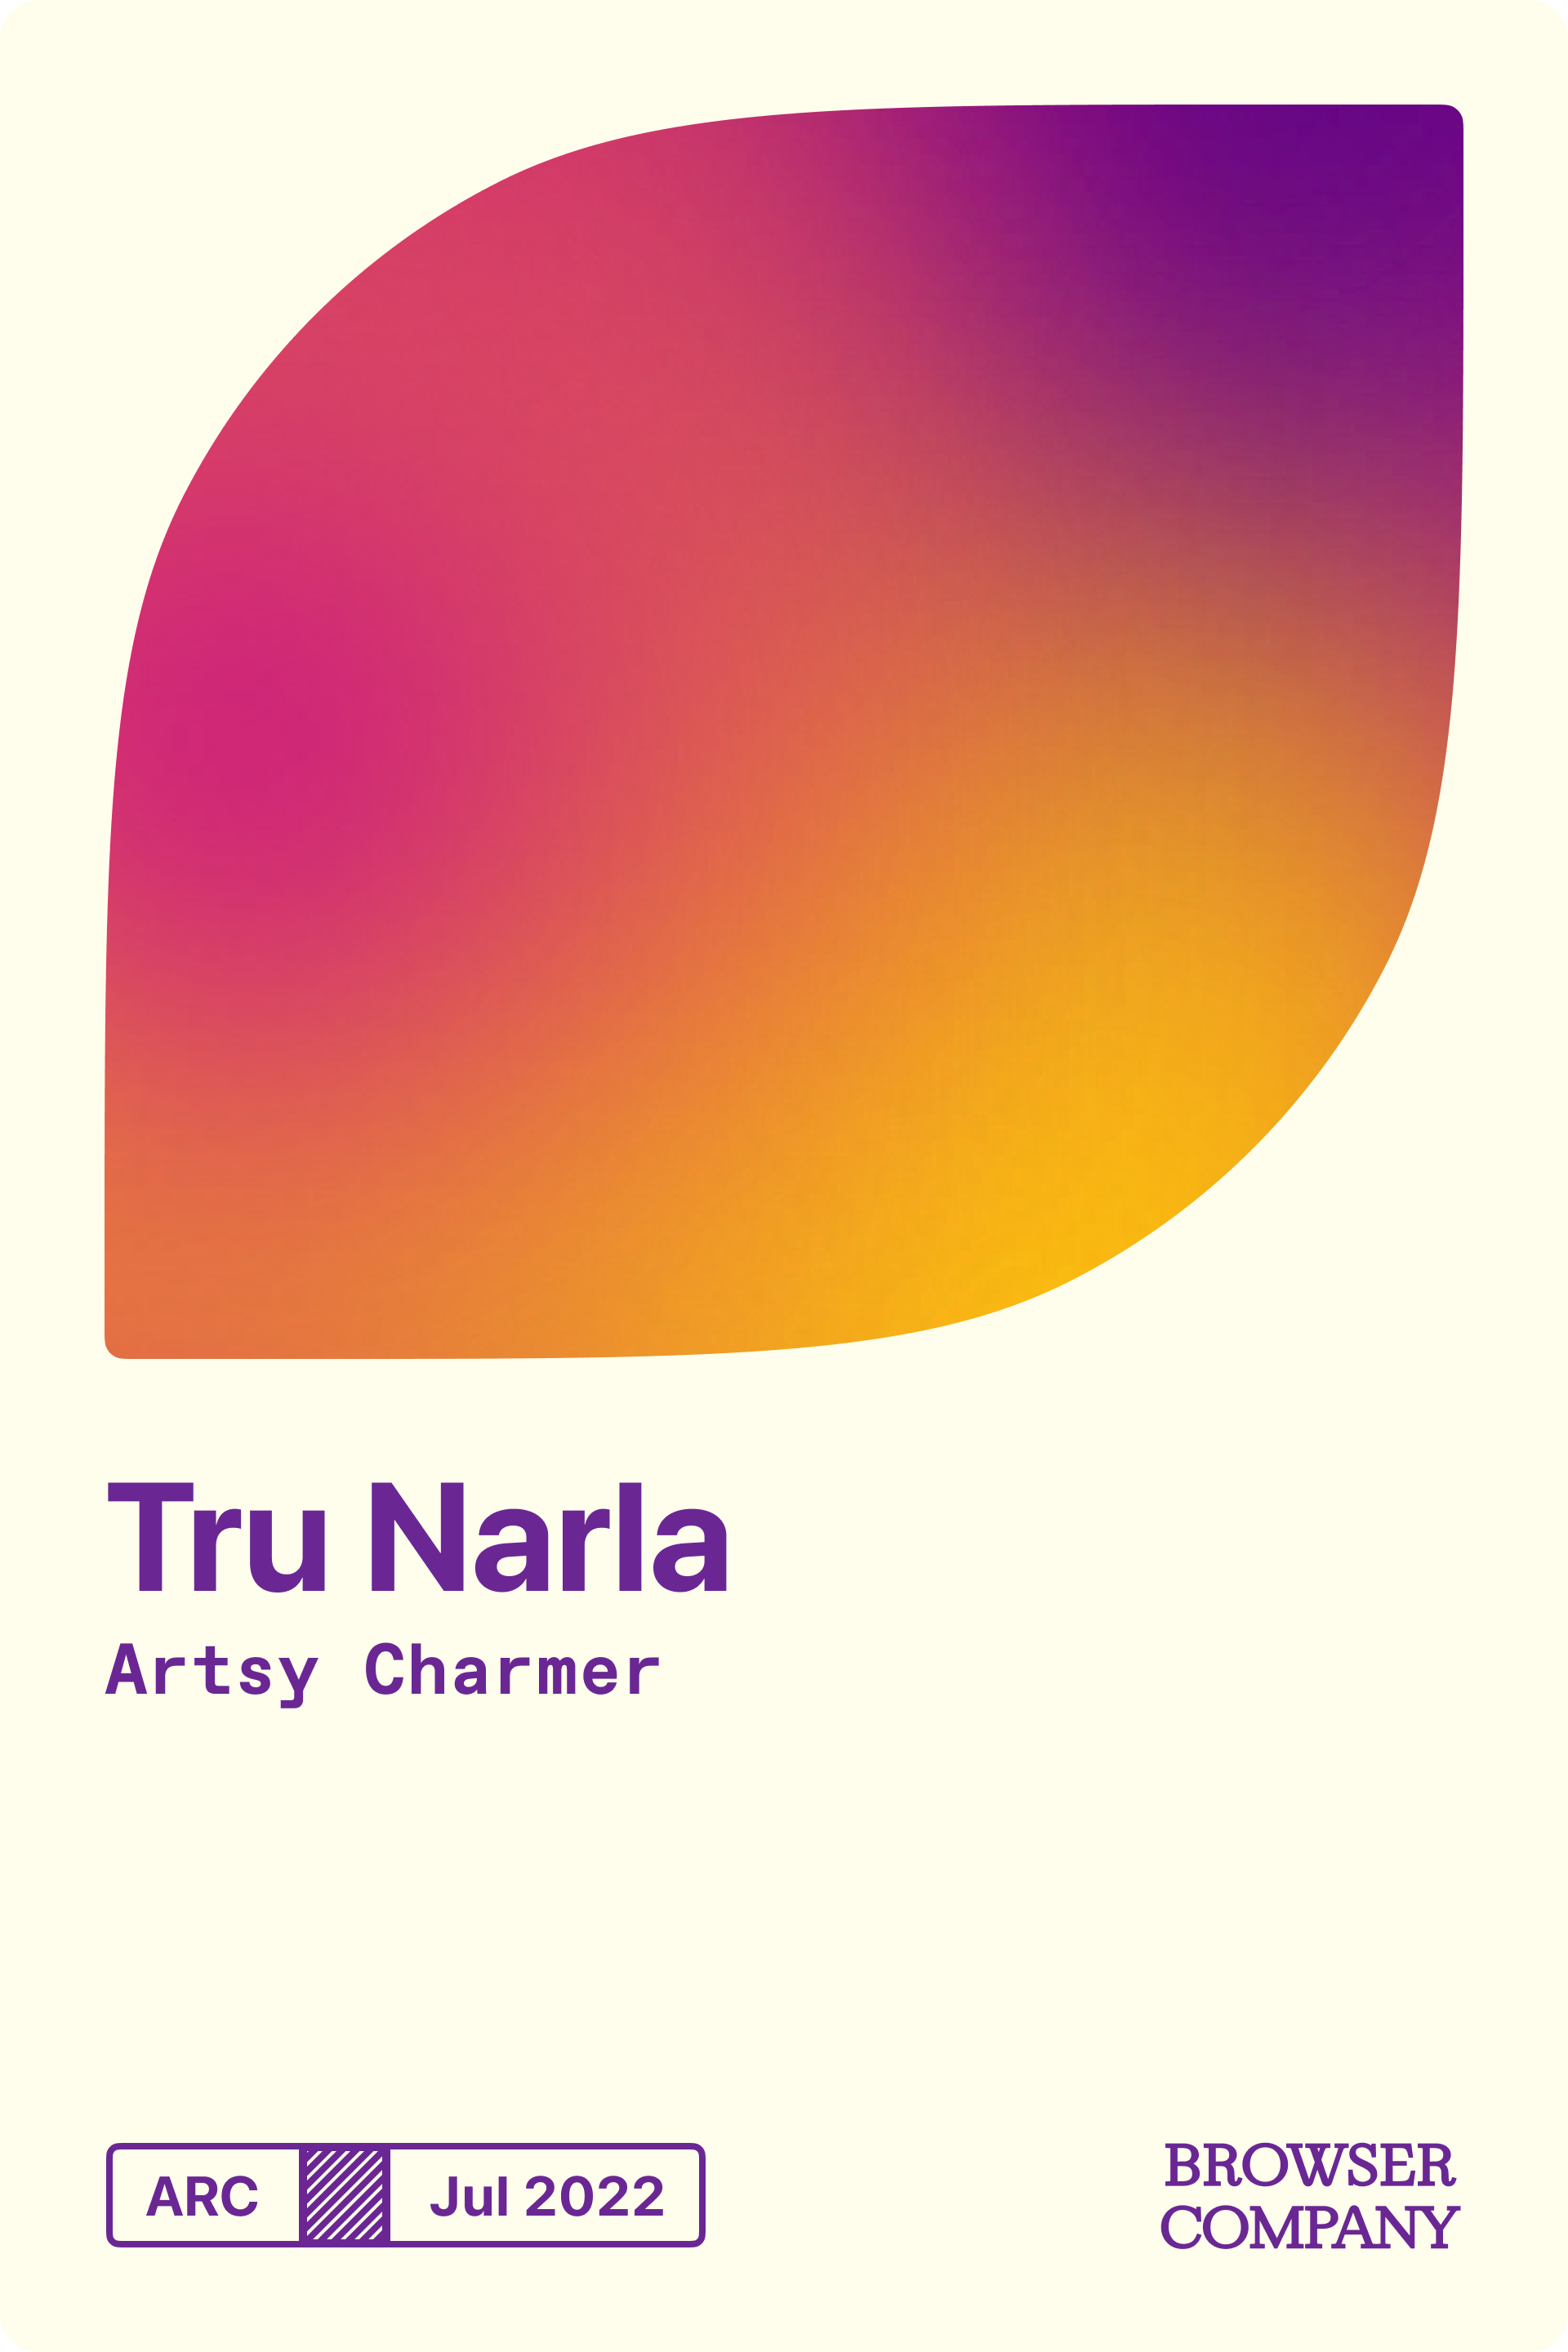 Tru Narla's Member Card